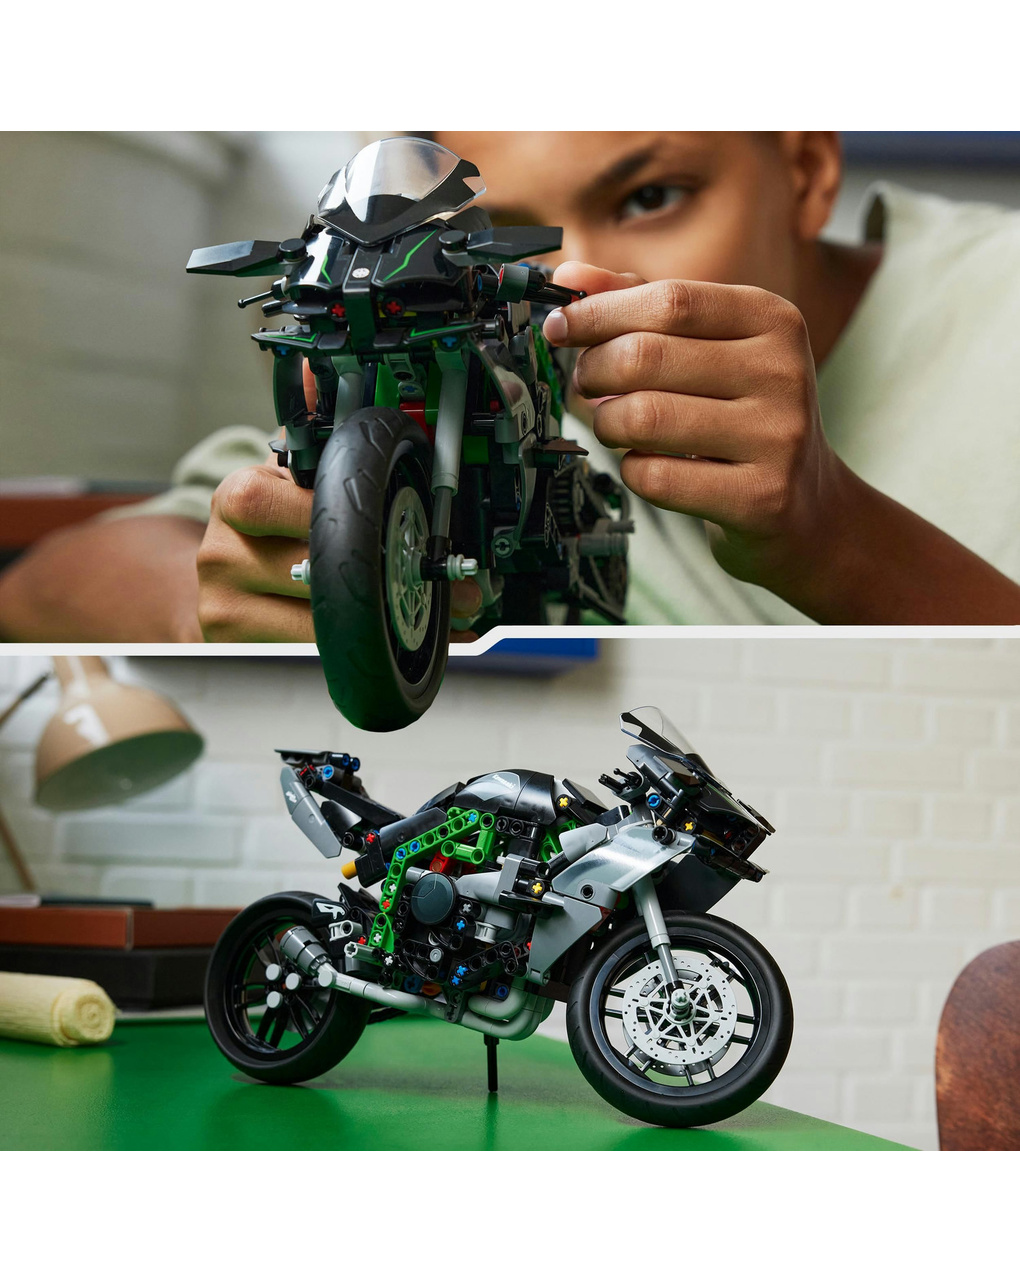 Motocicletta kawasaki ninja h2r - 42170 - lego technic - LEGO